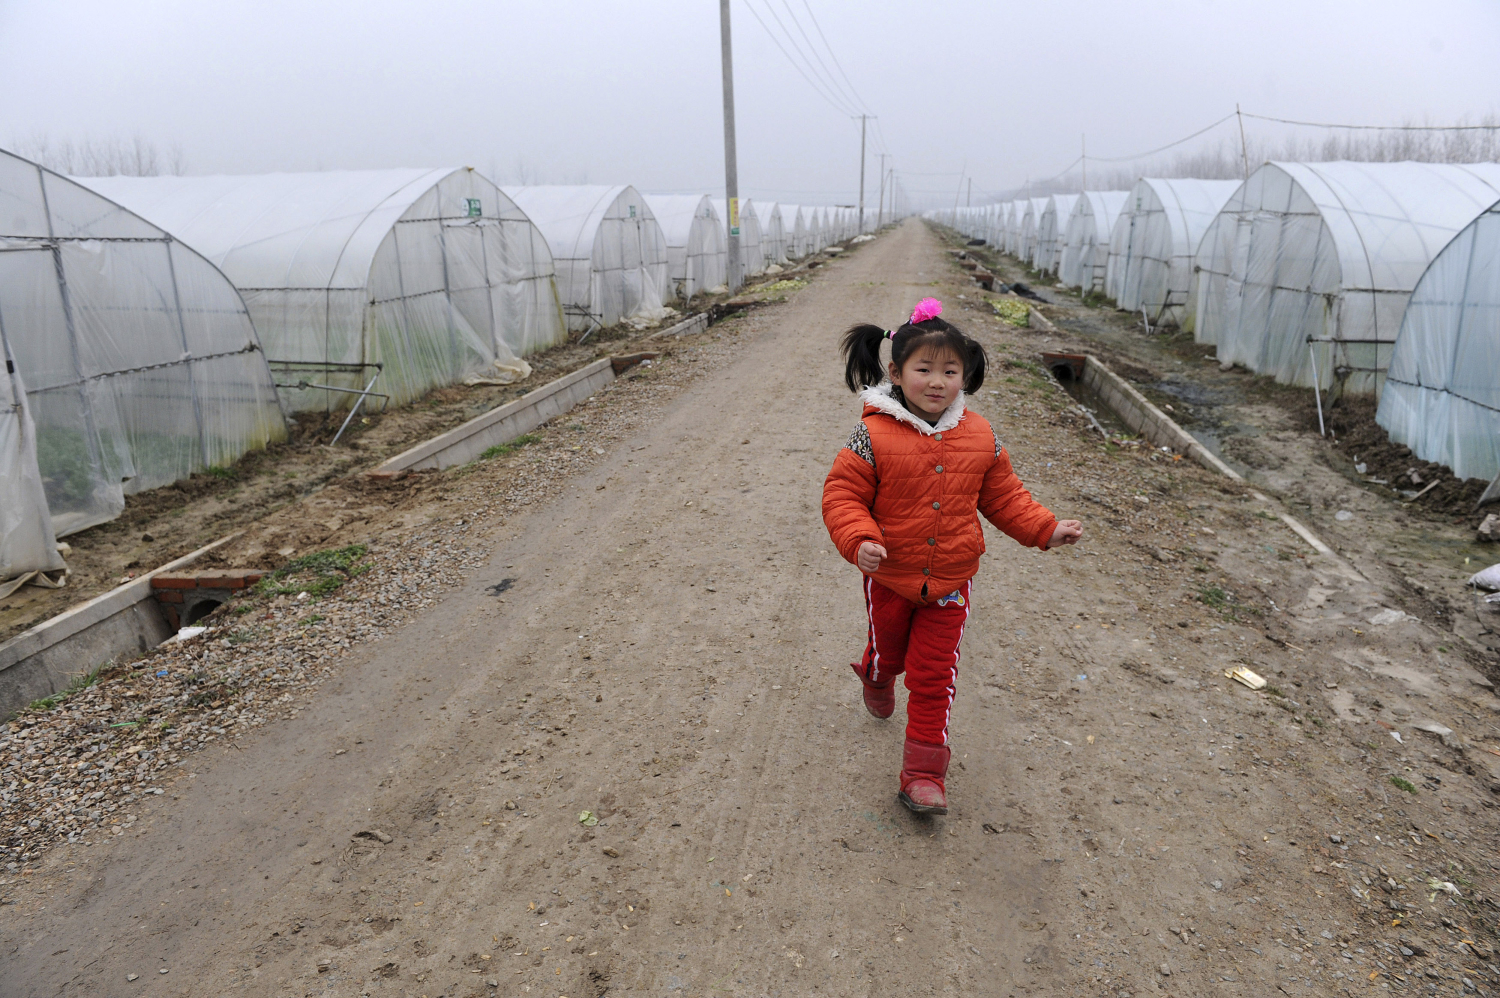 El auge económico en China provoca el abandono de nueve millones de niños en zonas rurales